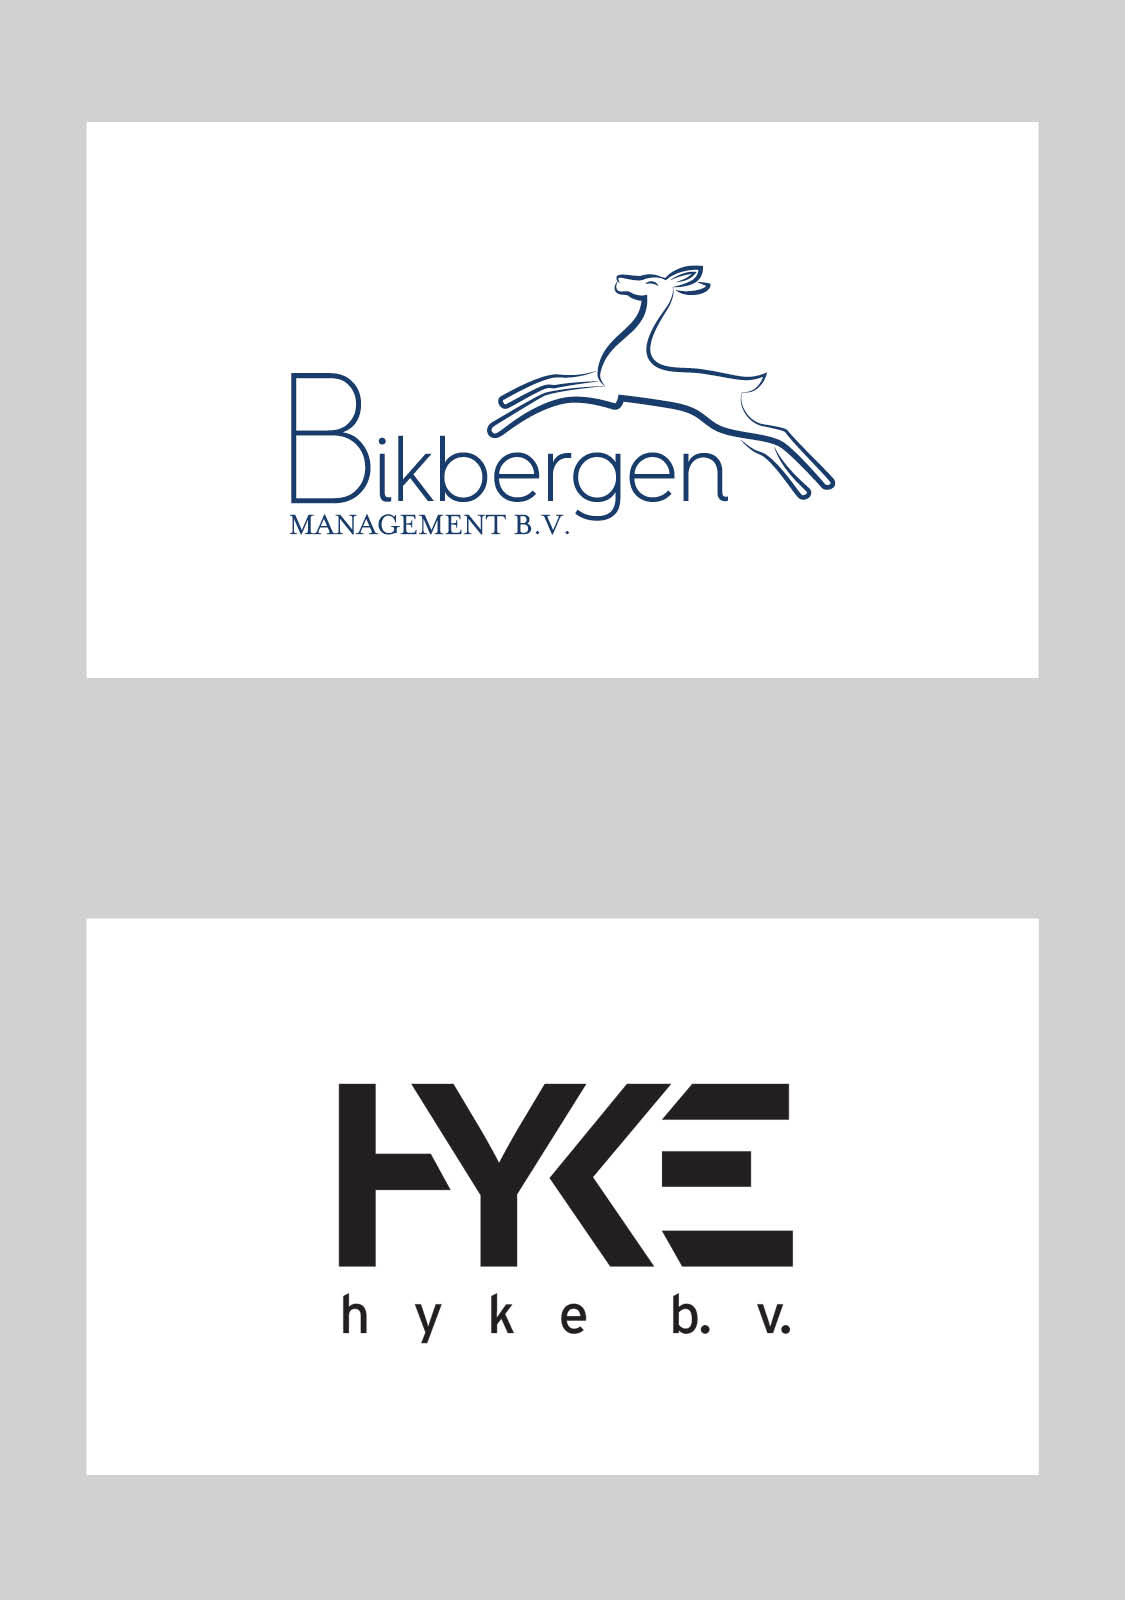 Logo-ontwerp-hyke_bv_bikbergen_management